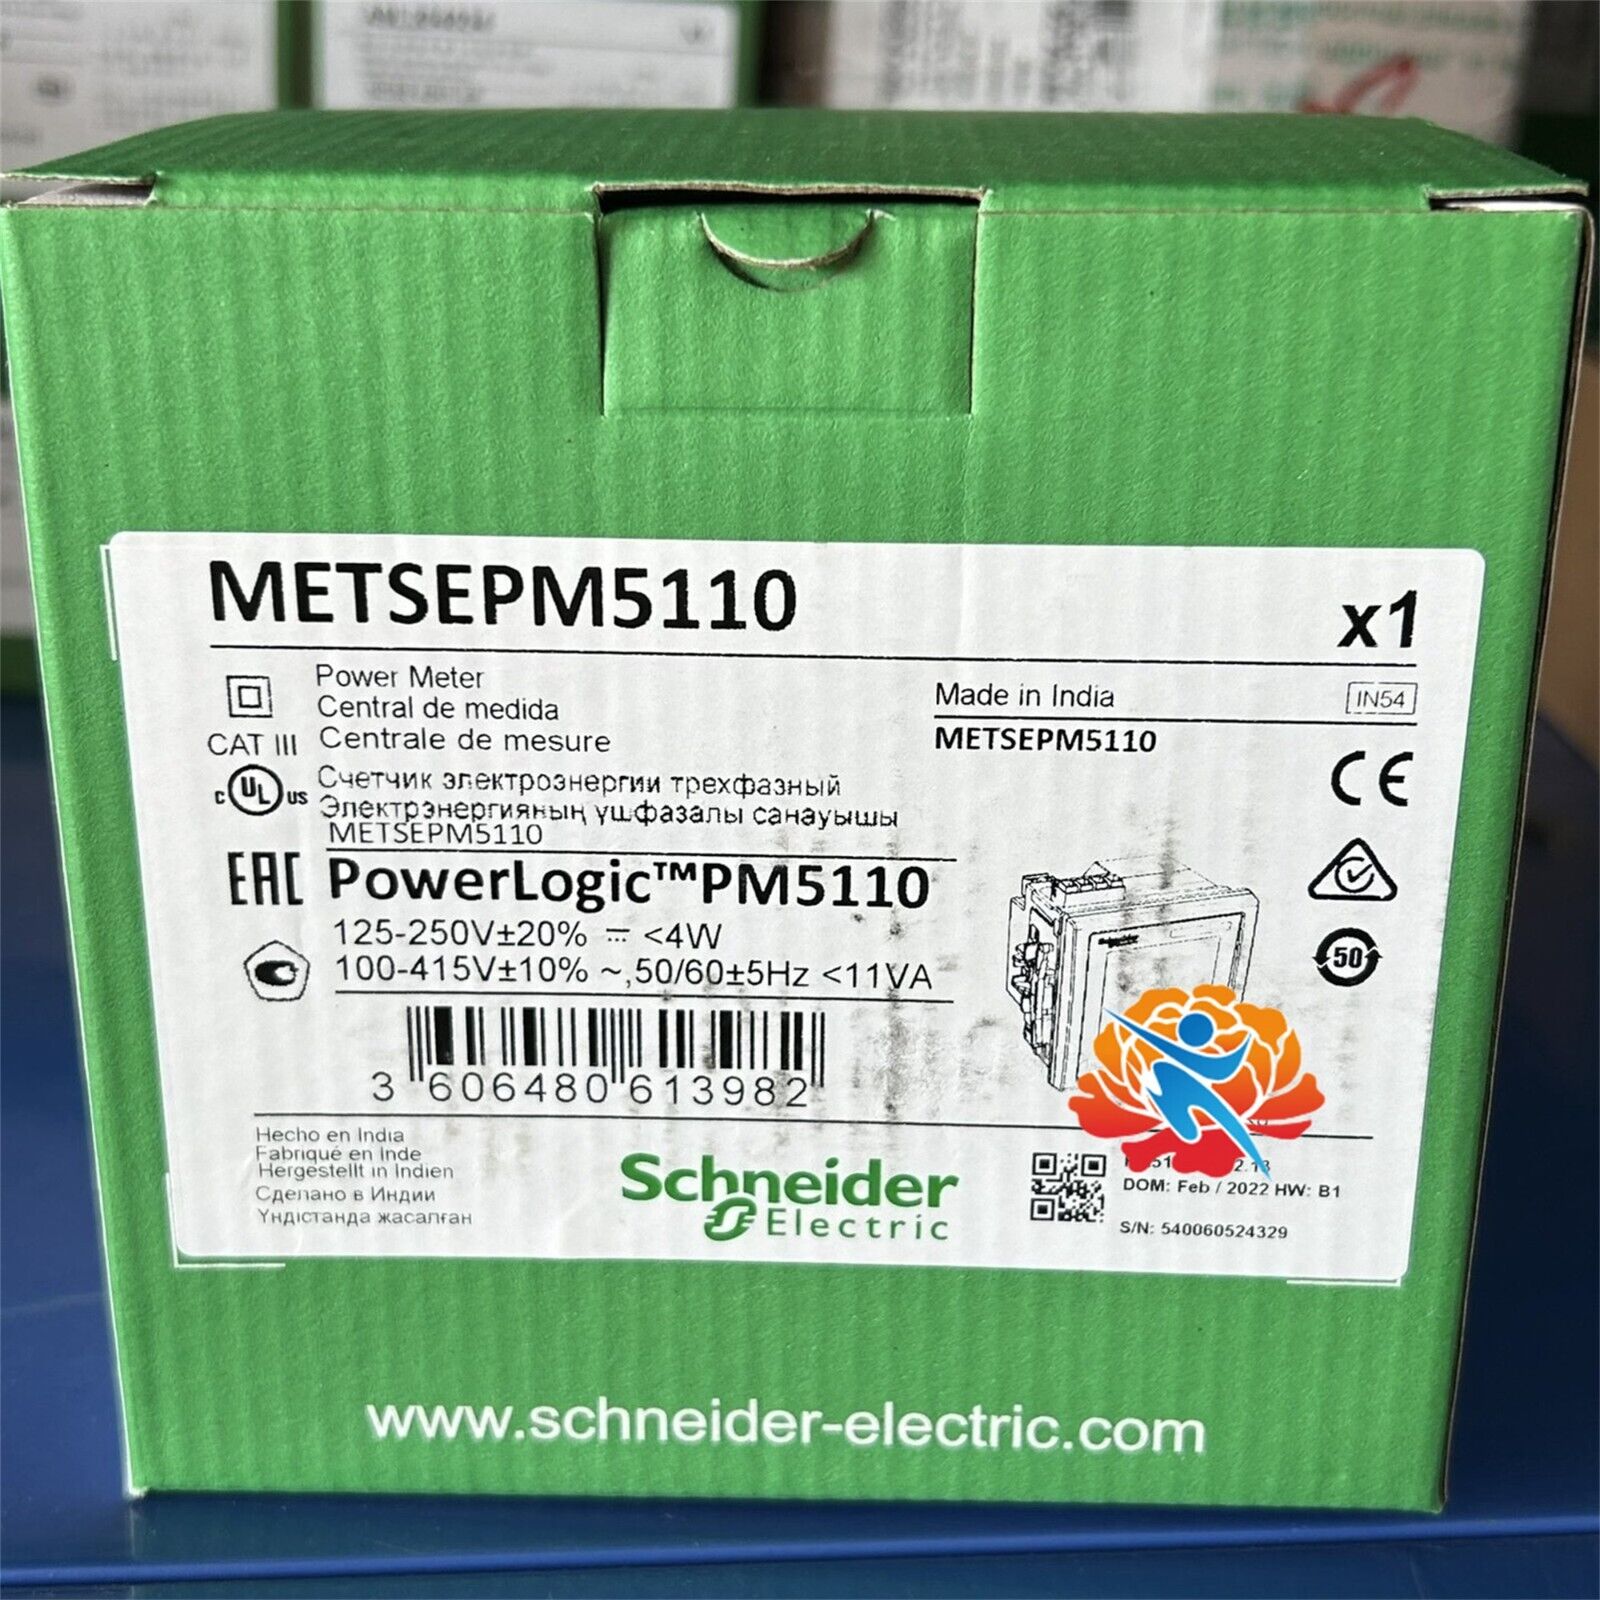 METSEPM5110 Multi-function power meter,brand new original genuine product